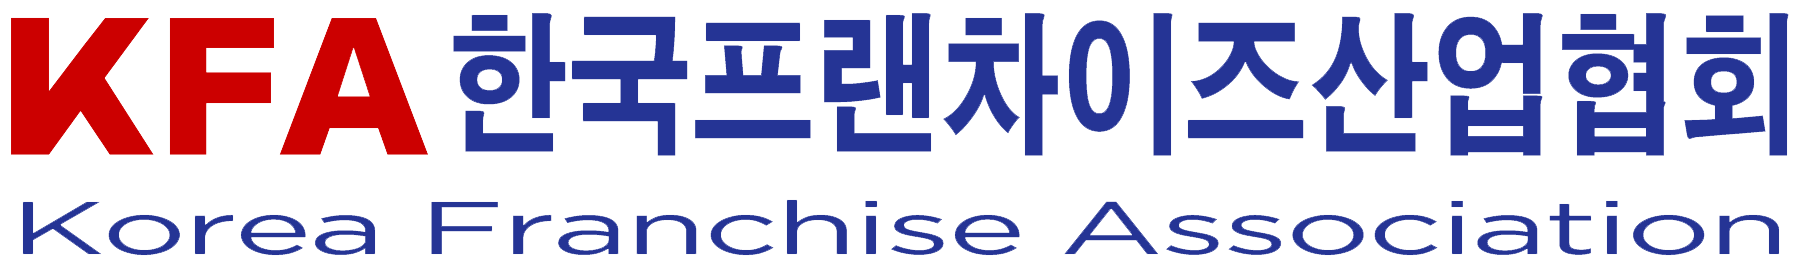 (사)한국프랜차이즈산업협회의 기업로고